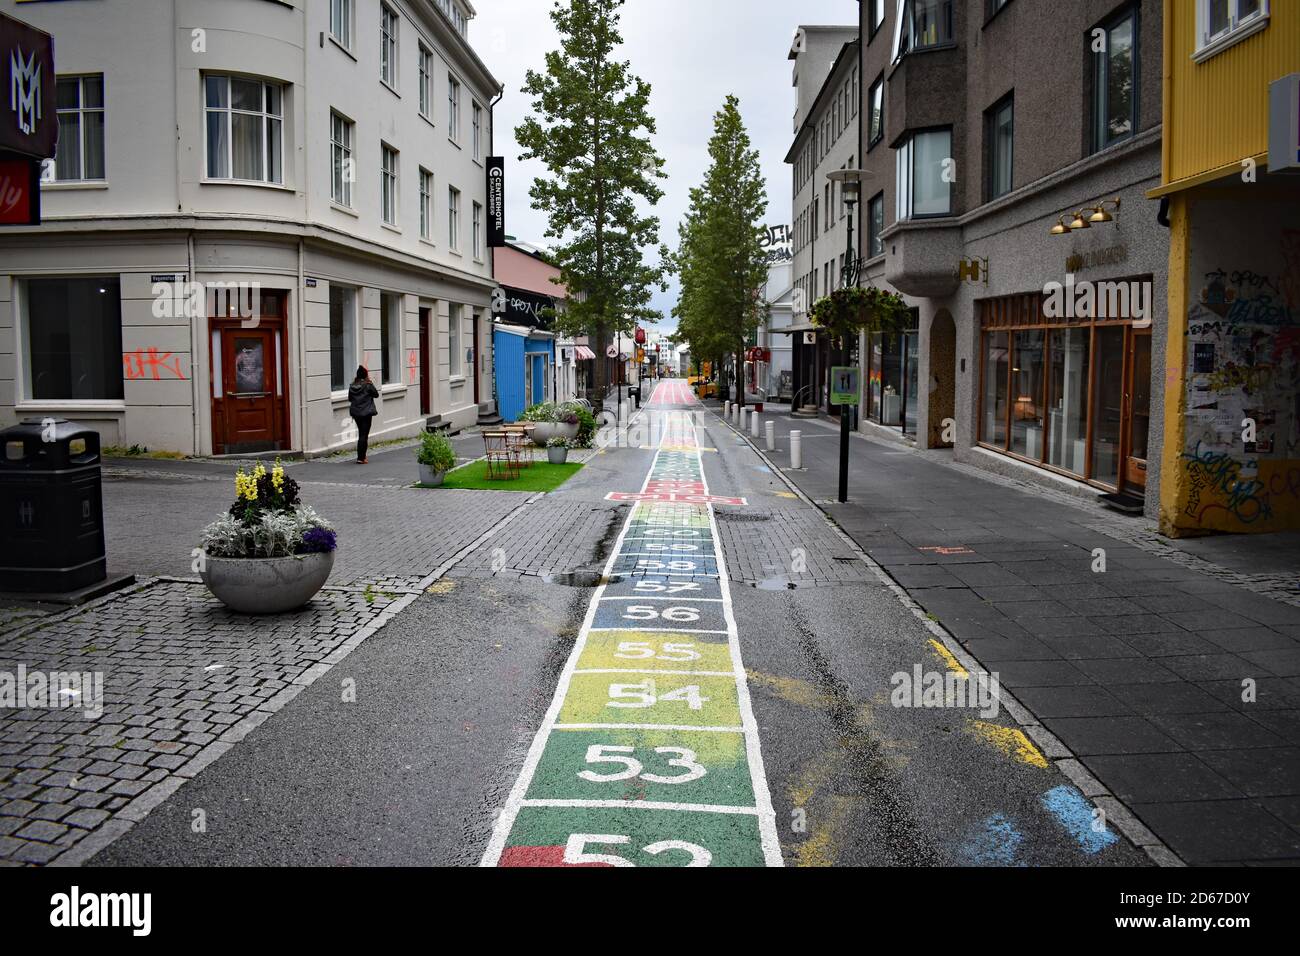 Laugavegur, die Haupteinkaufsstraße in Reykjavik, Island. Bunte Schachteln mit Zahlen ab 53 sind auf die Straße gemalt. Stockfoto